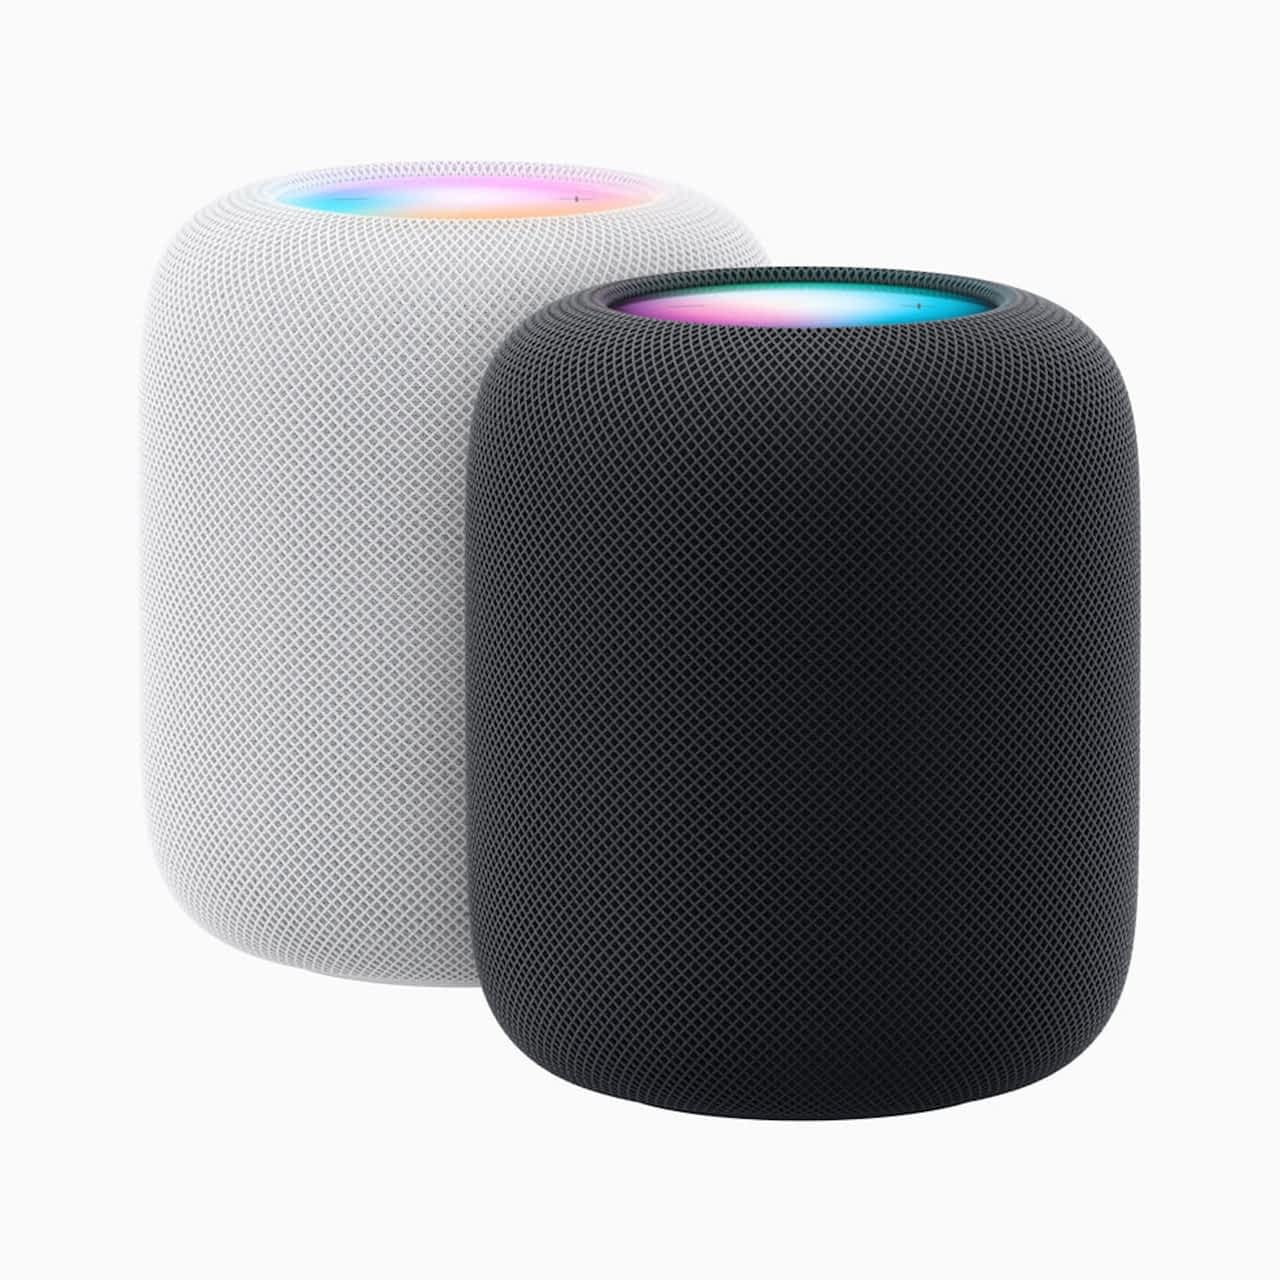 苹果推出第二代 HomePod ，具备烟雾与一氧化碳警报感知以及温湿度监测功能